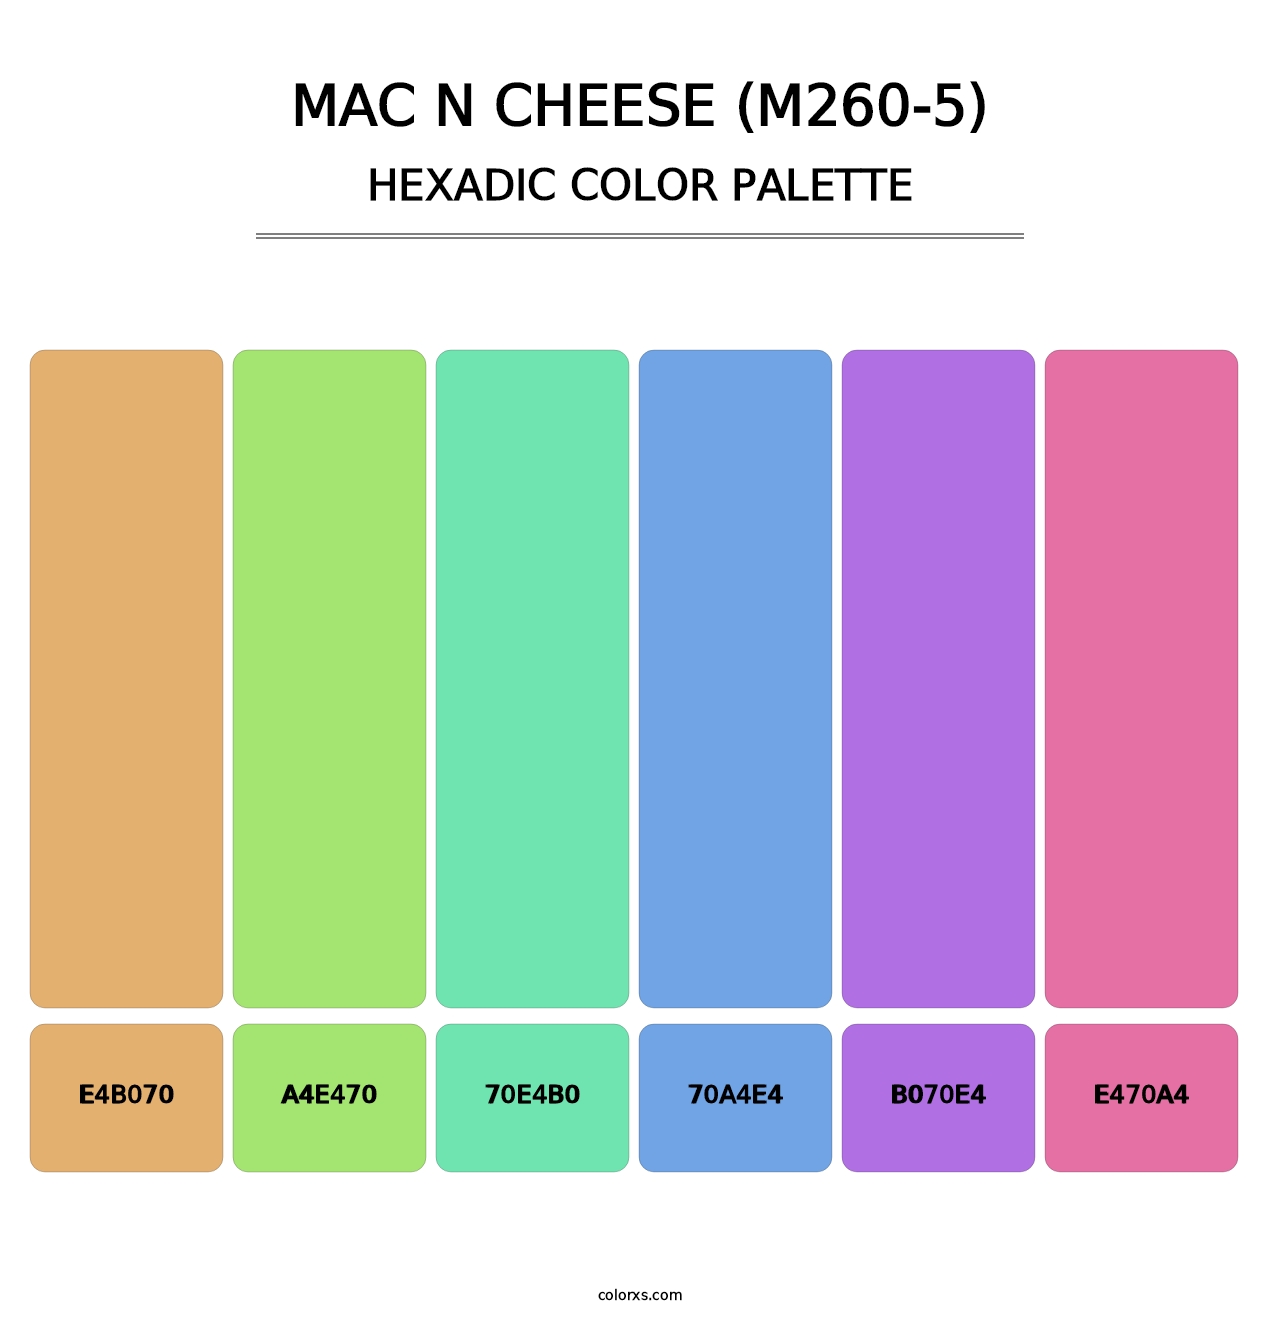 Mac N Cheese (M260-5) - Hexadic Color Palette